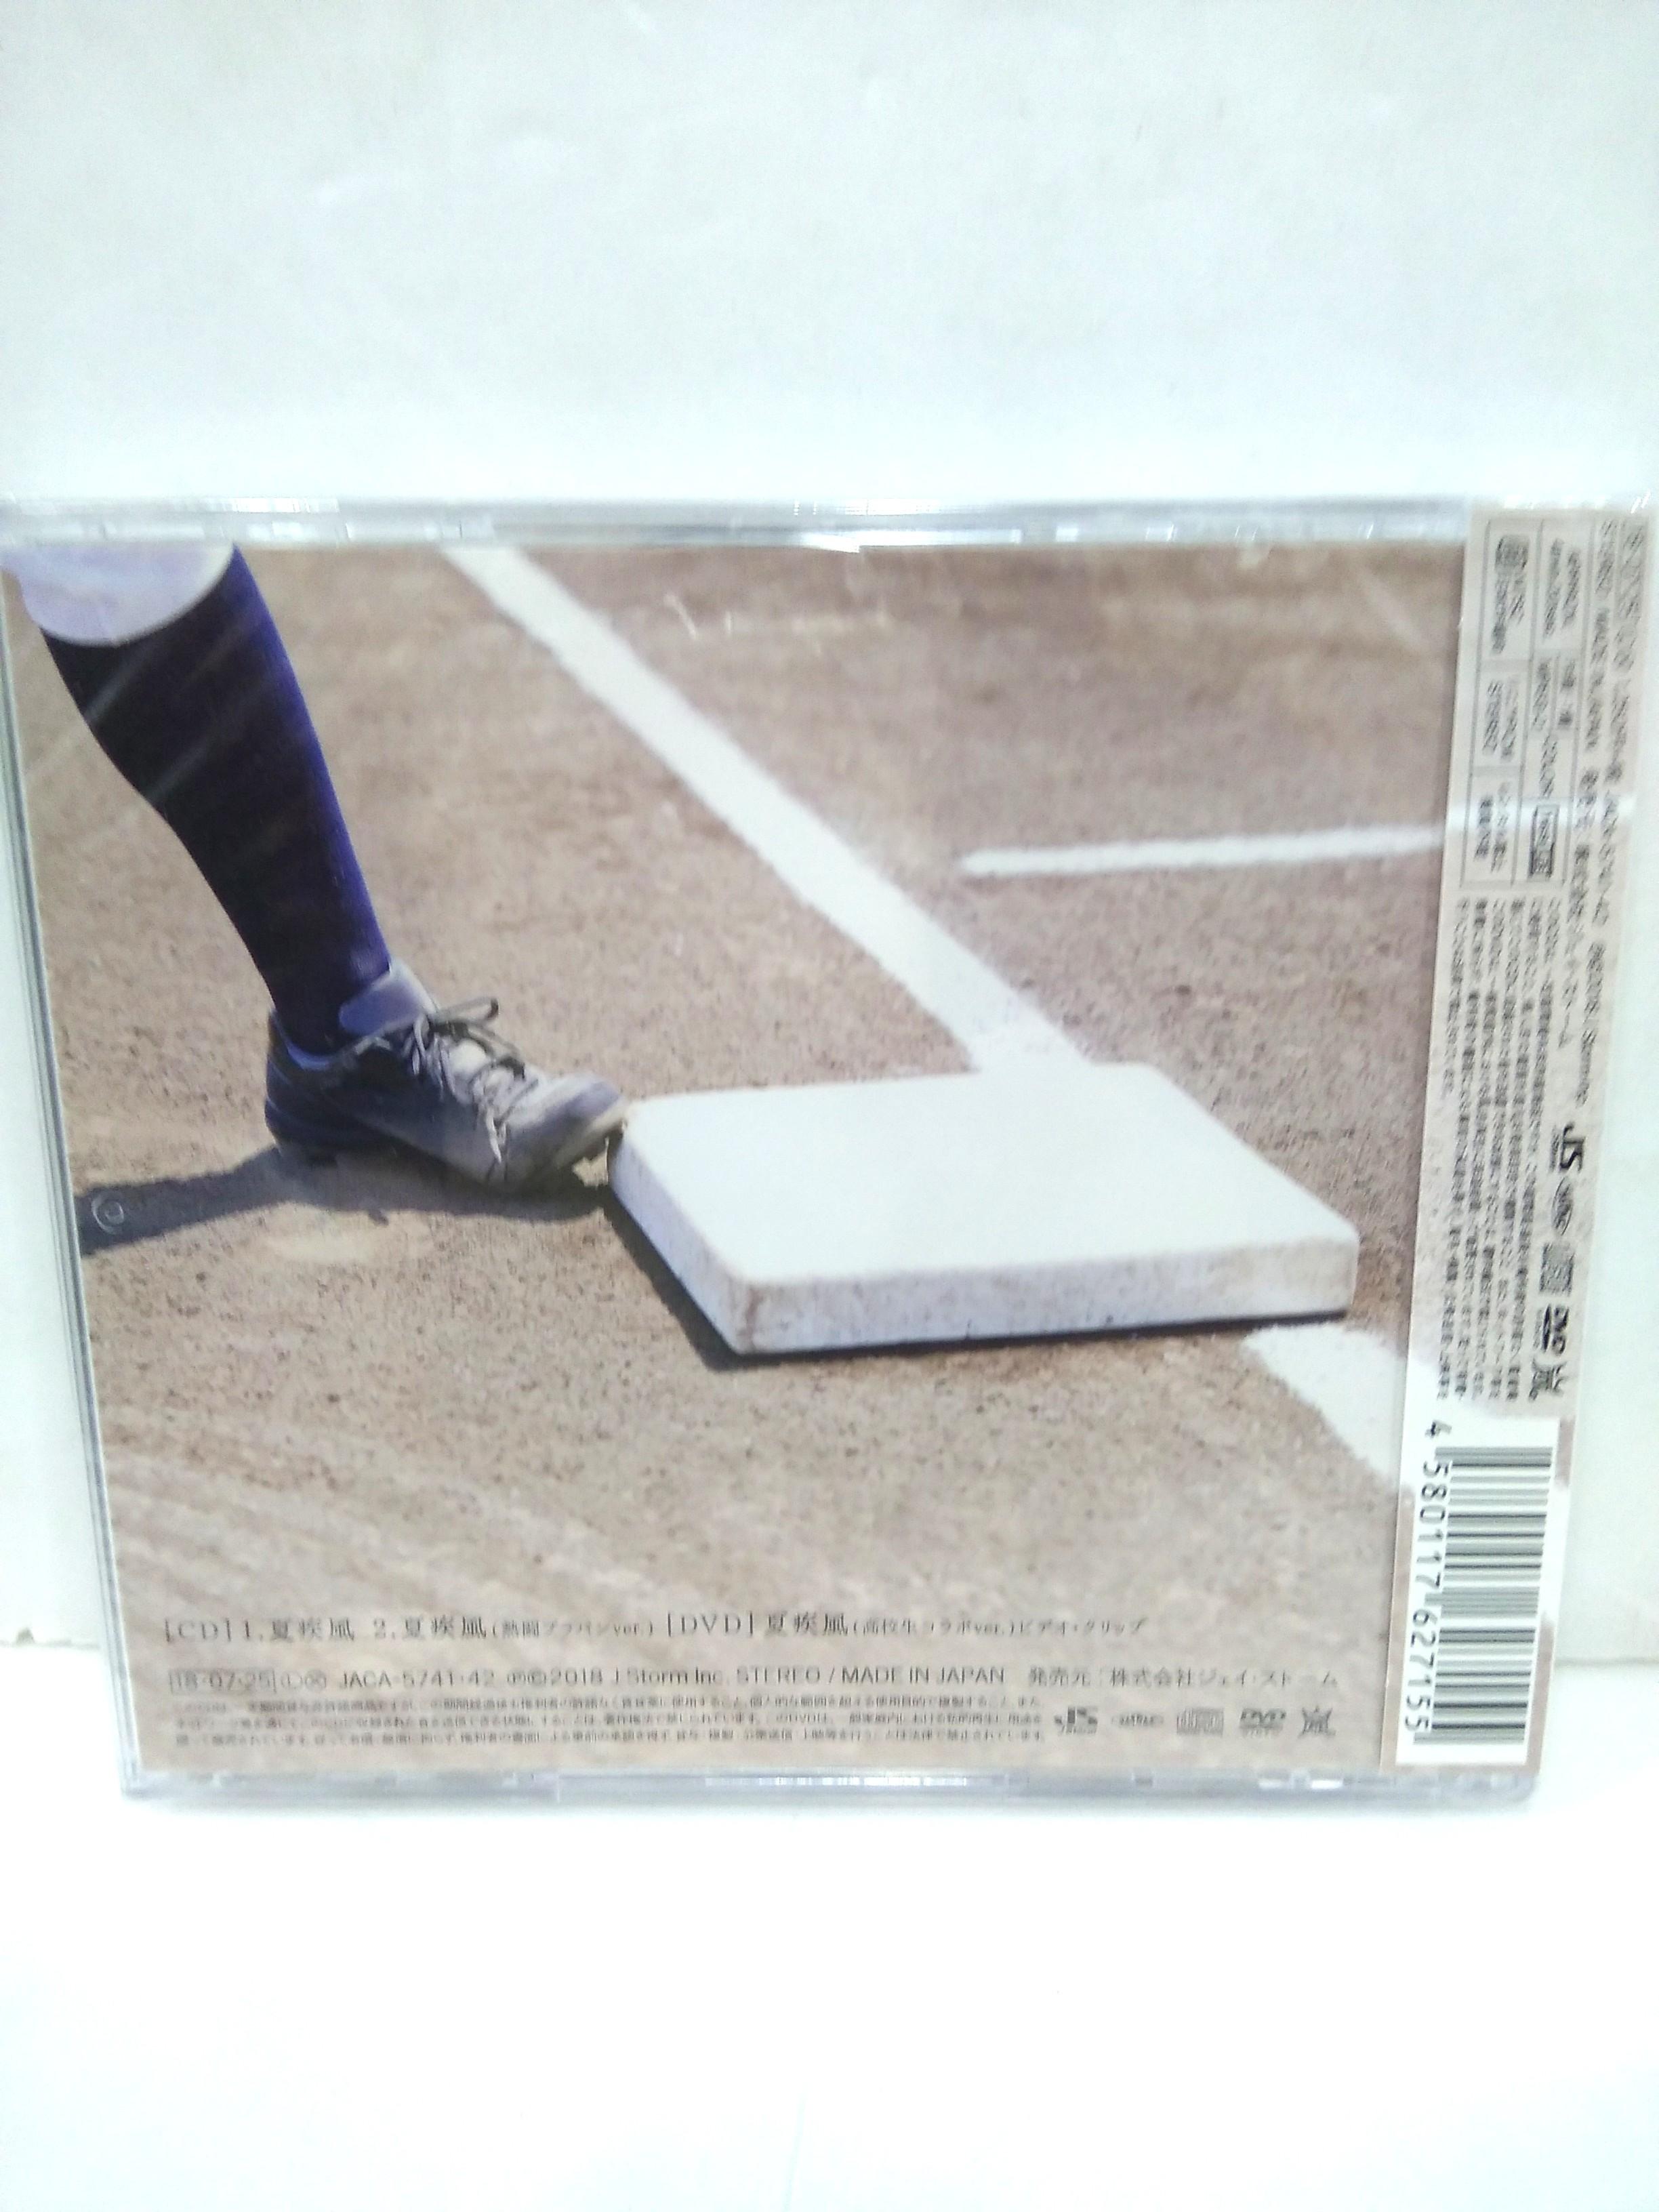 Arashi 嵐夏疾風高校野球盤日本版, 興趣及遊戲, 收藏品及紀念品, 日本